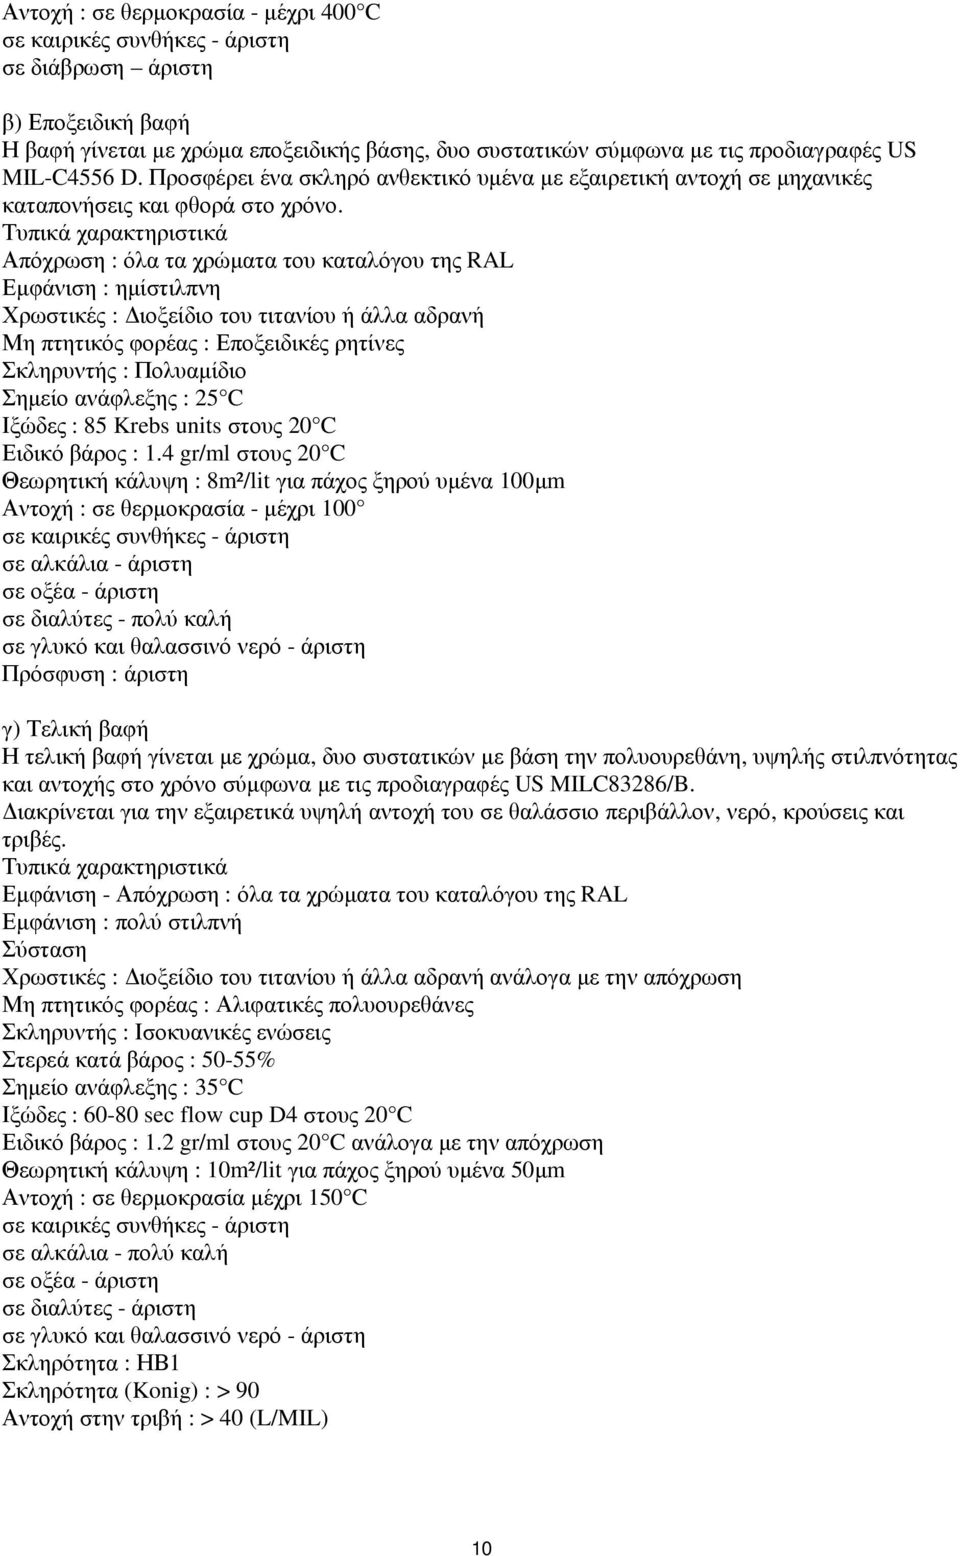 Τυπικά χαρακτηριστικά Απόχρωση : όλα τα χρώµατα του καταλόγου της RAL Εµφάνιση : ηµίστιλπνη Χρωστικές : ιοξείδιο του τιτανίου ή άλλα αδρανή Μη πτητικός φορέας : Εποξειδικές ρητίνες Σκληρυντής :